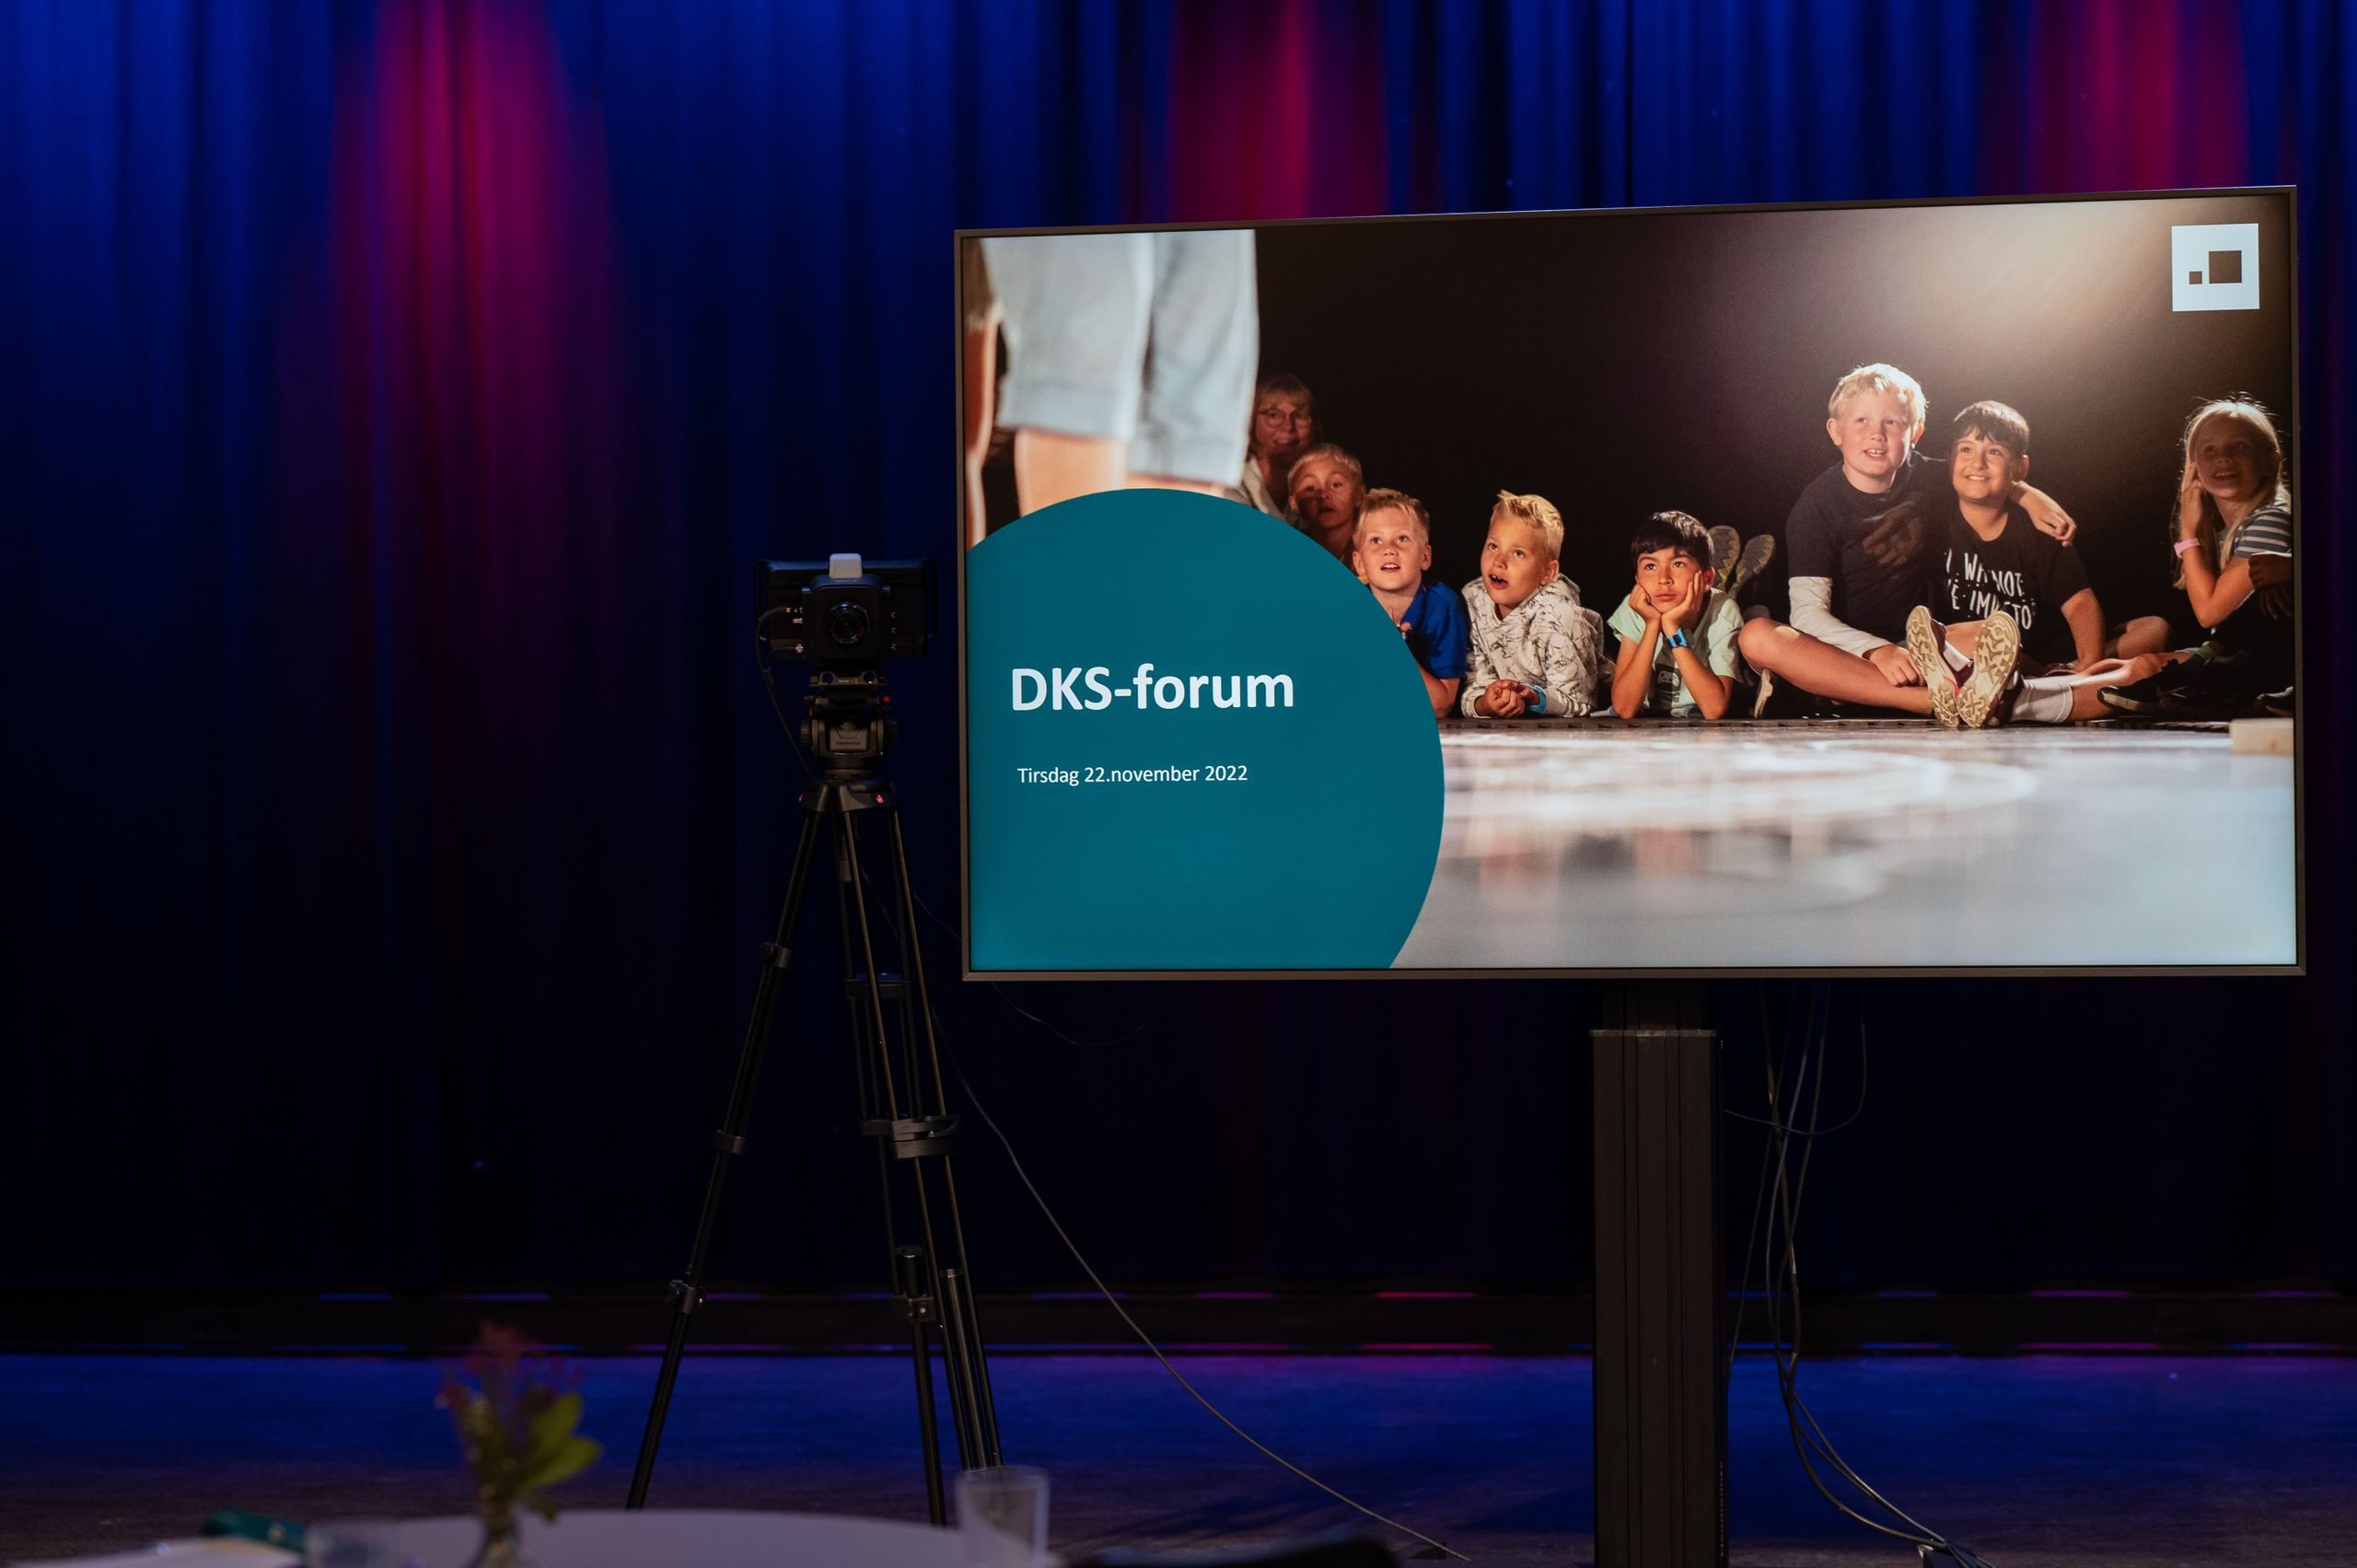 Et skjerm hvor det står "DKS-forum"